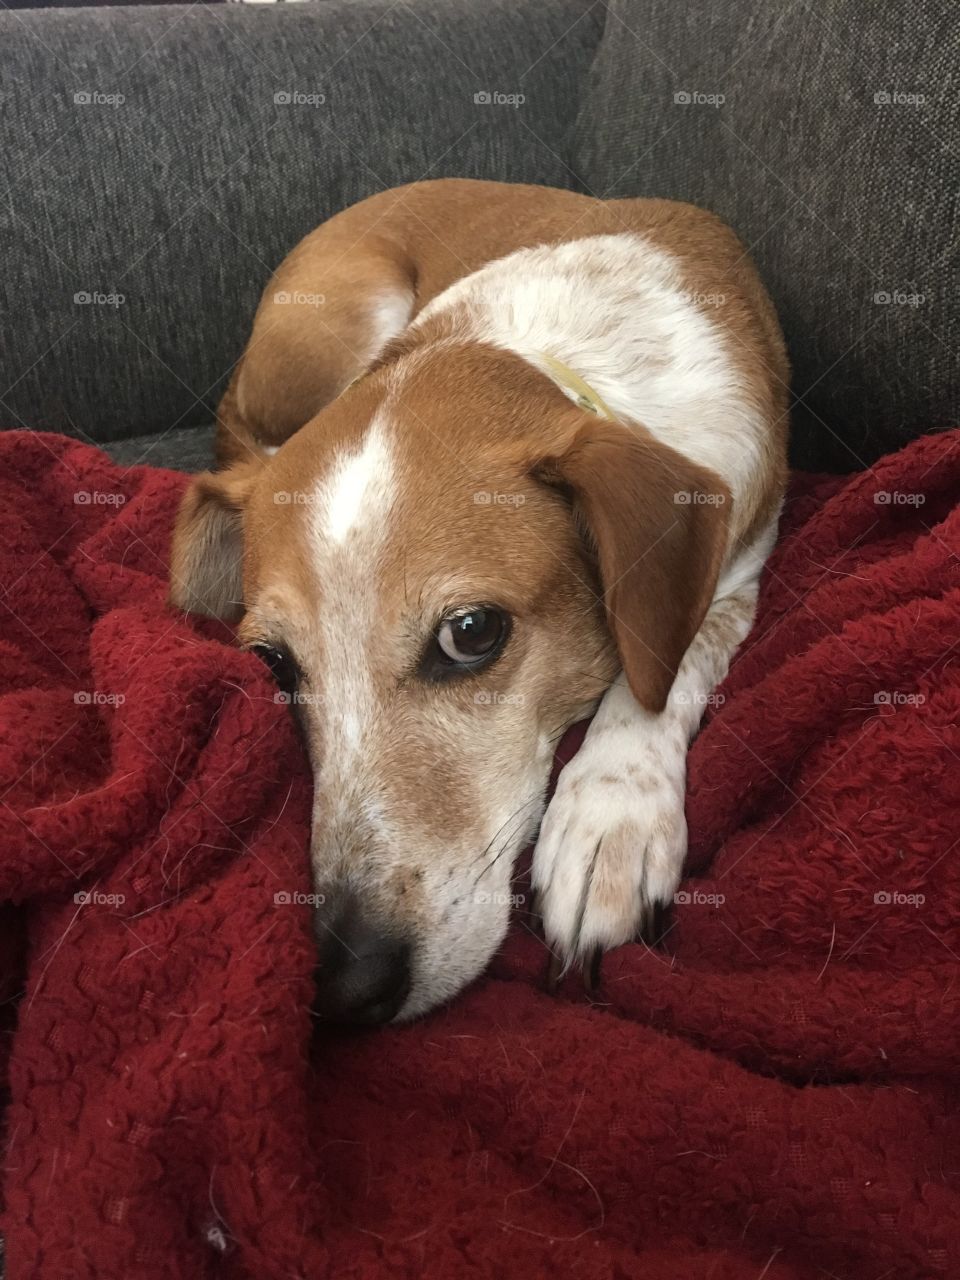 Sweet beagle fuzzy red blanket looking mutt